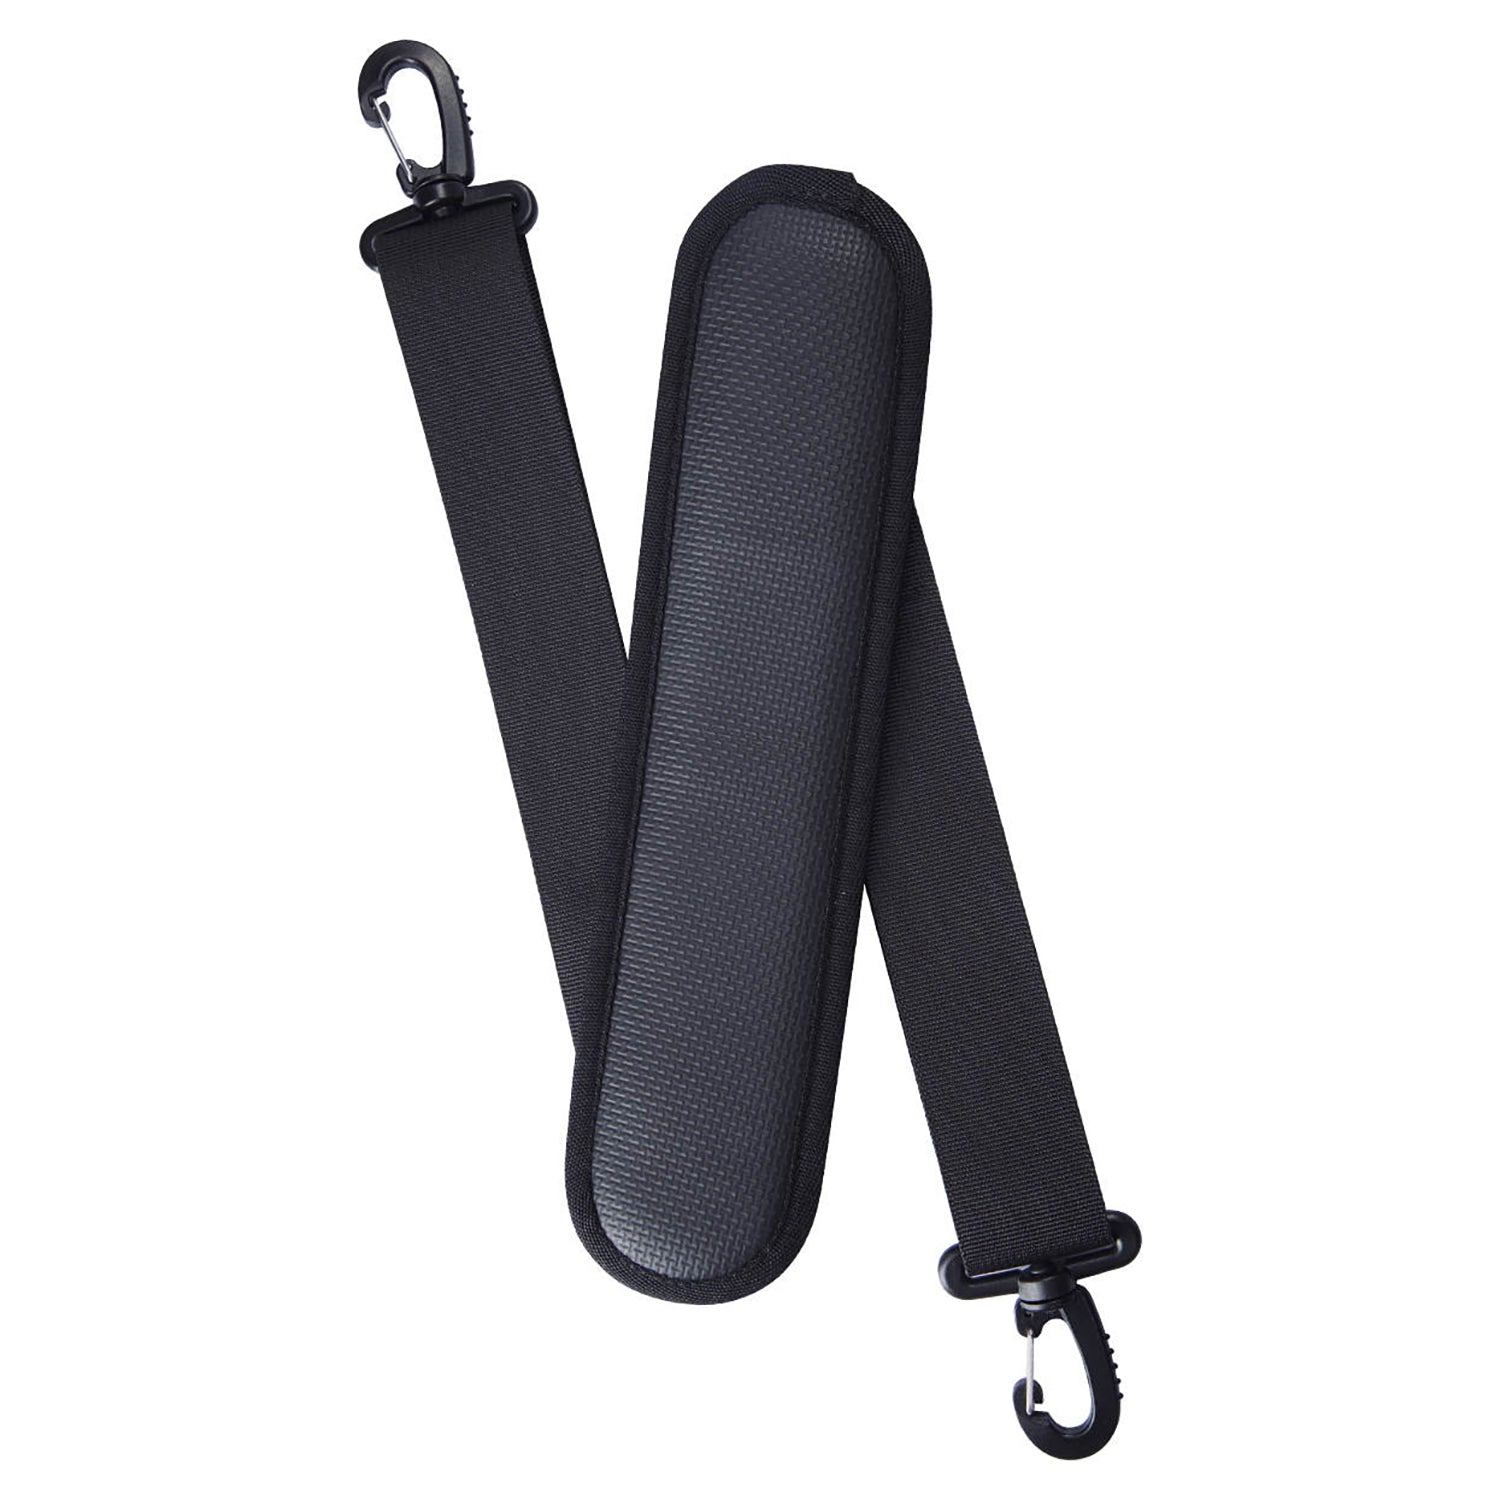 "Sangle de transport noire ajustable boucles et clips qualité premium tout confort pour planches de SUP Yogaterrae"